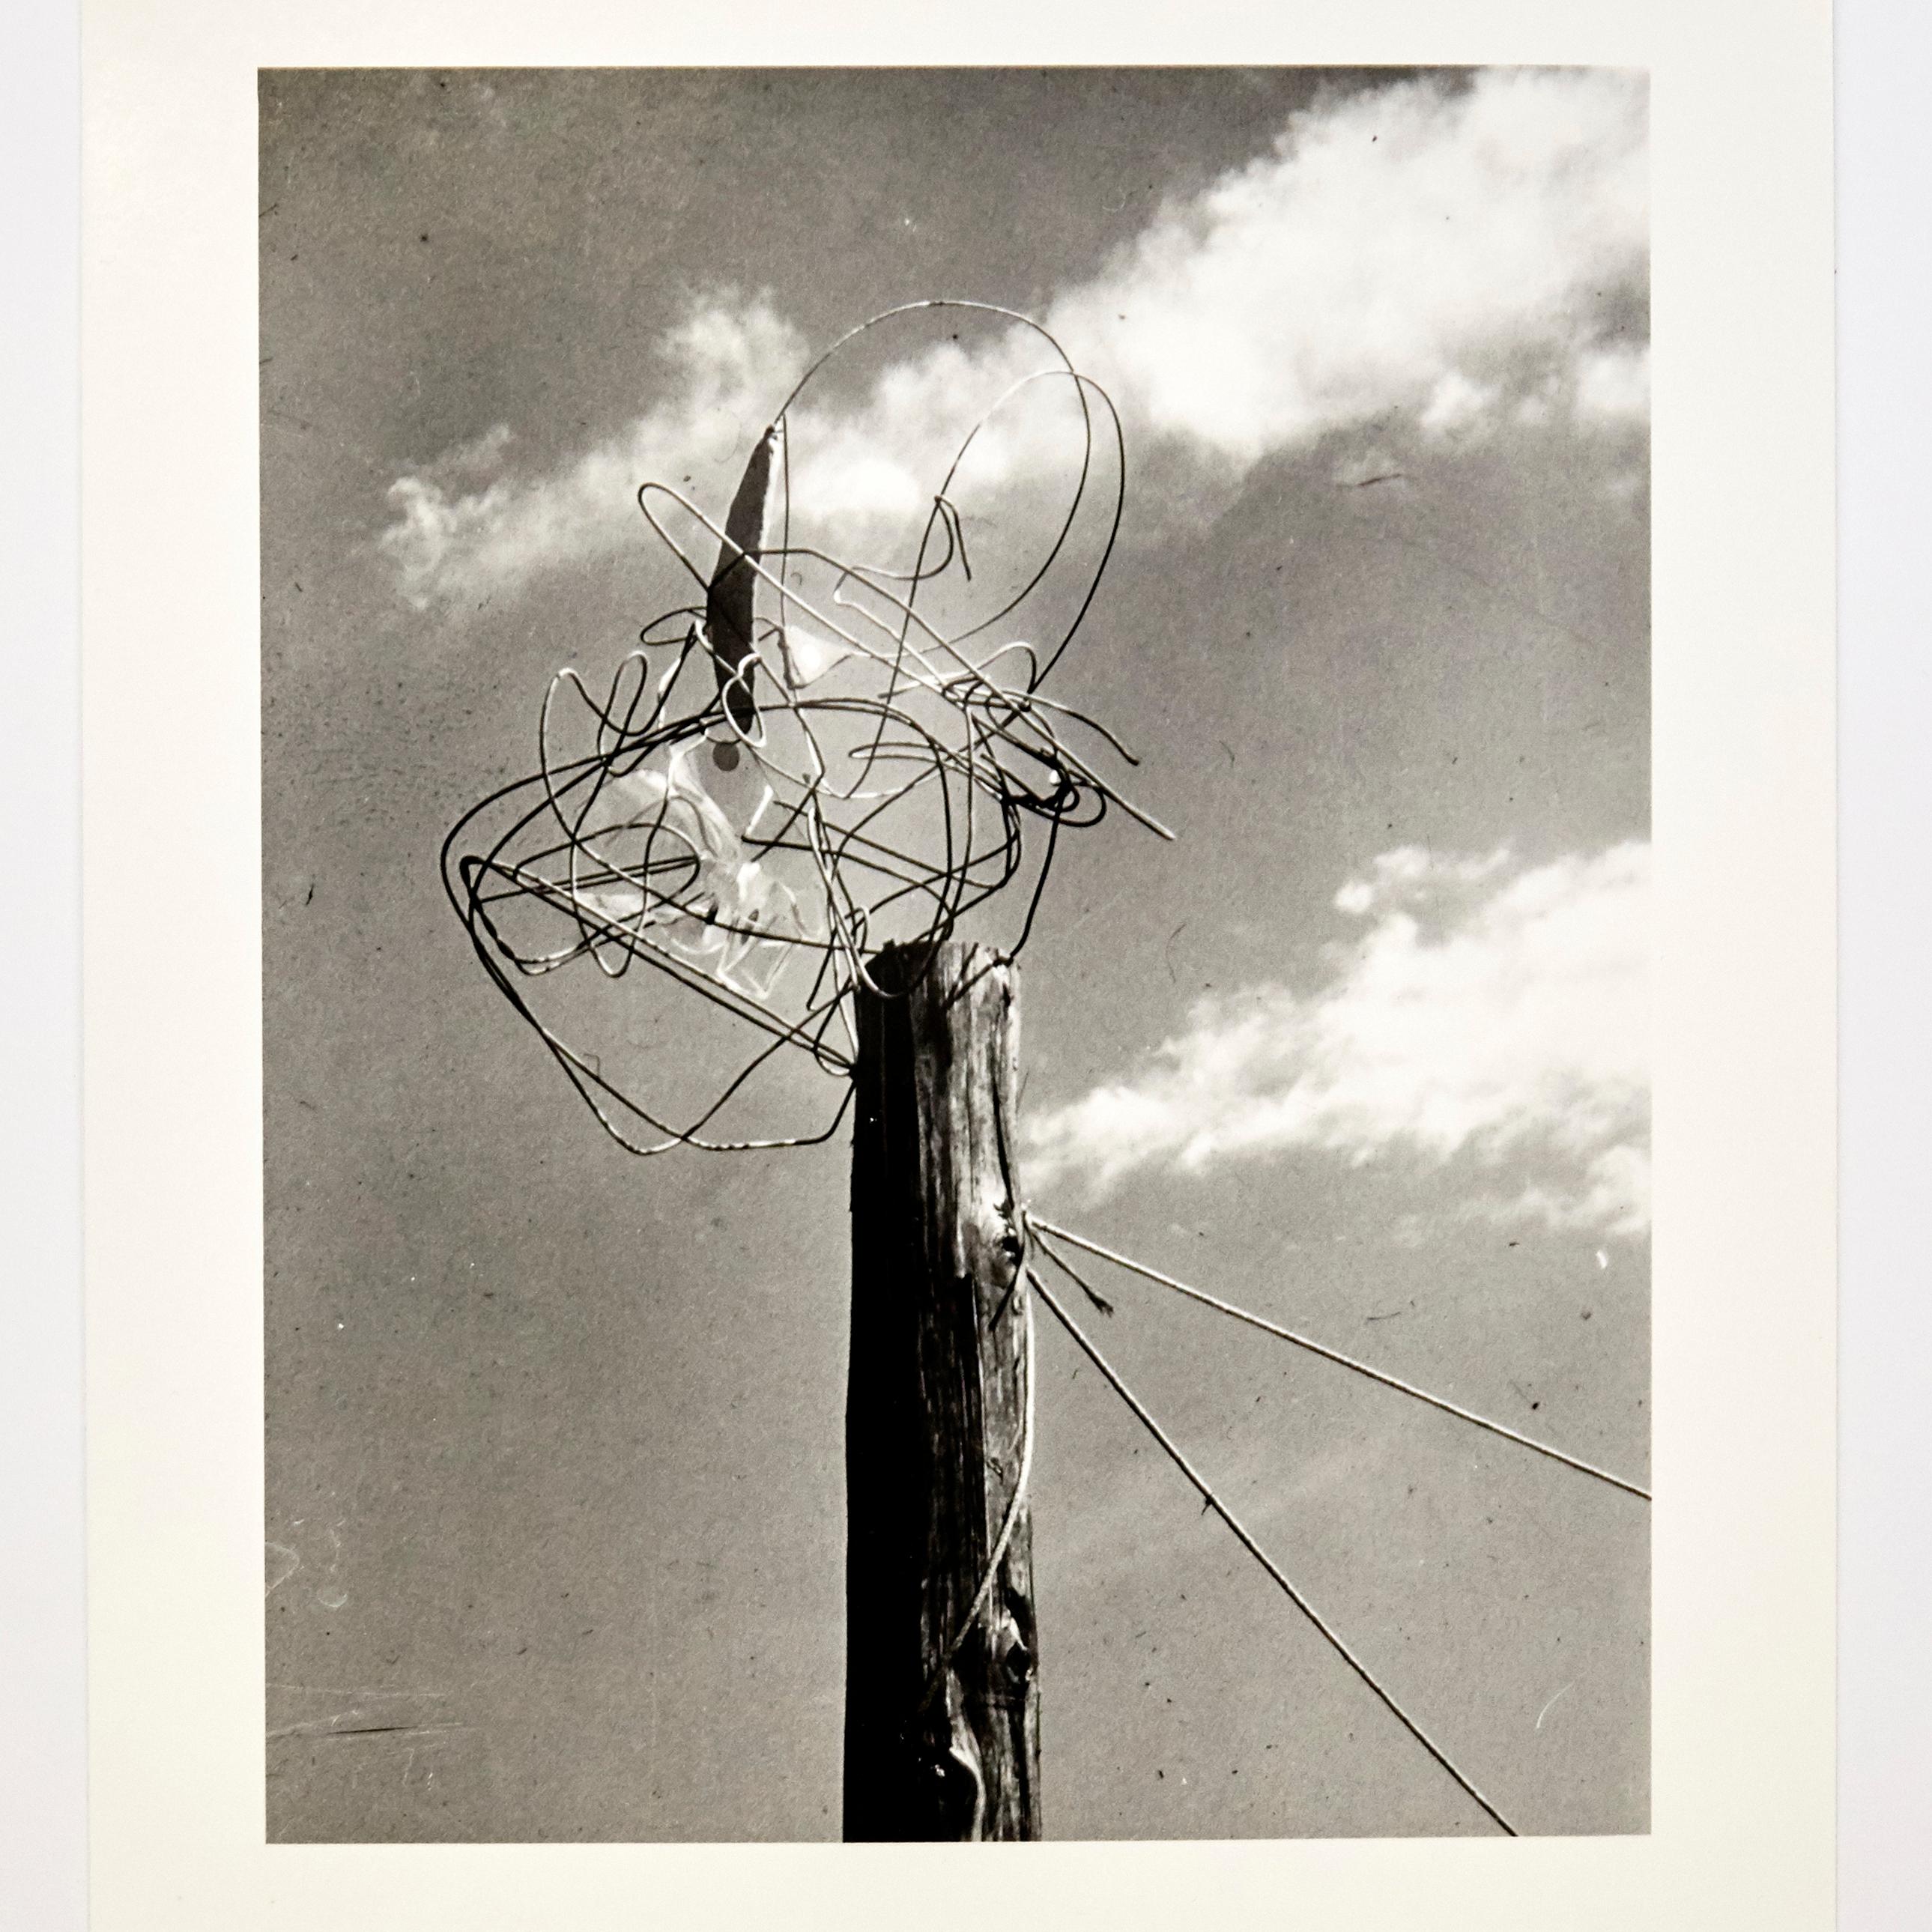 László Moholy-Nagy photographie 6/6 d'un ensemble de 6 photographies.
Édition unique du dossier 